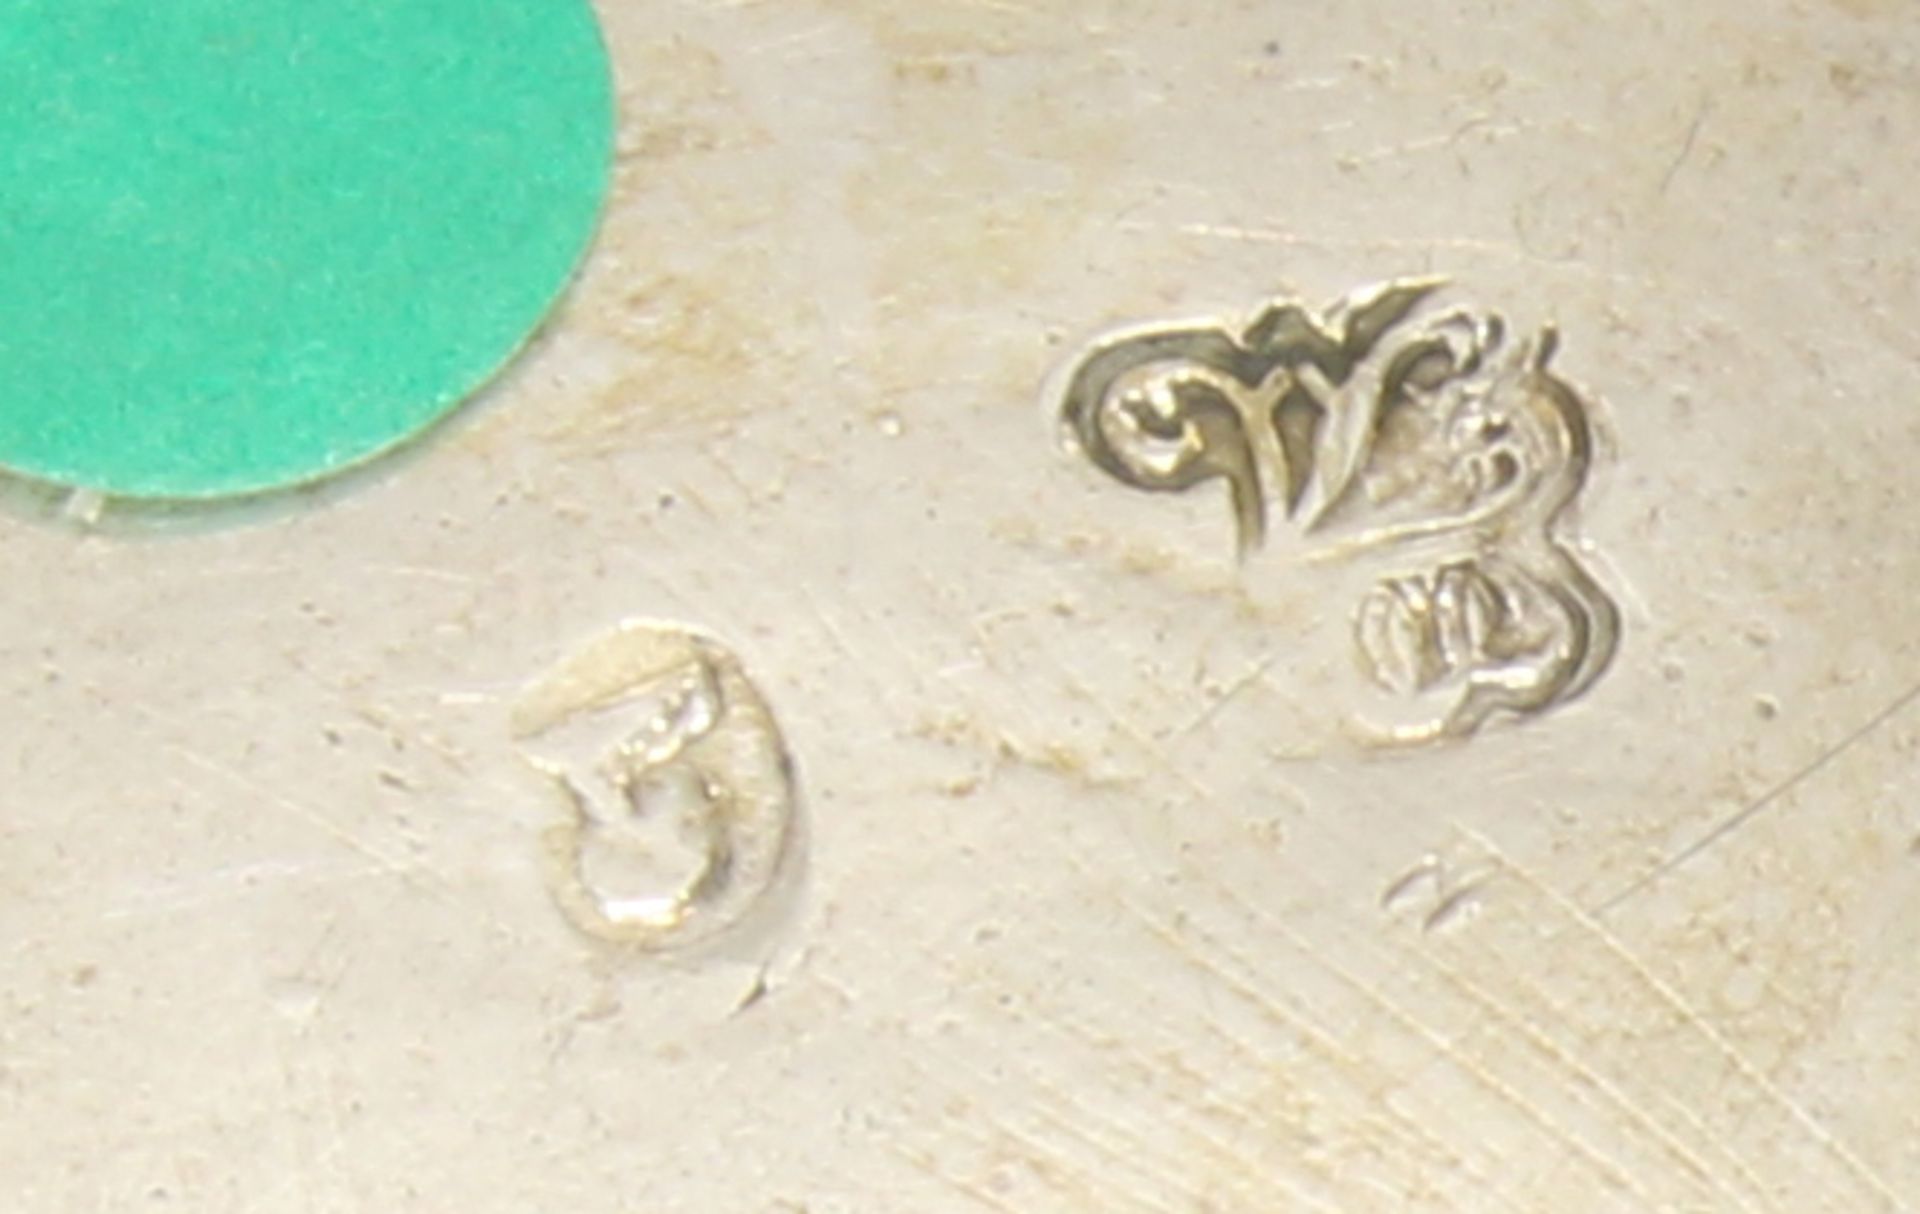 Amorettenkorb, Silber, Marken, à jour gearbeitet, auf Standfuß, 11 x 20 x 16.5 cm, ca. 335 g, gesta - Bild 2 aus 2